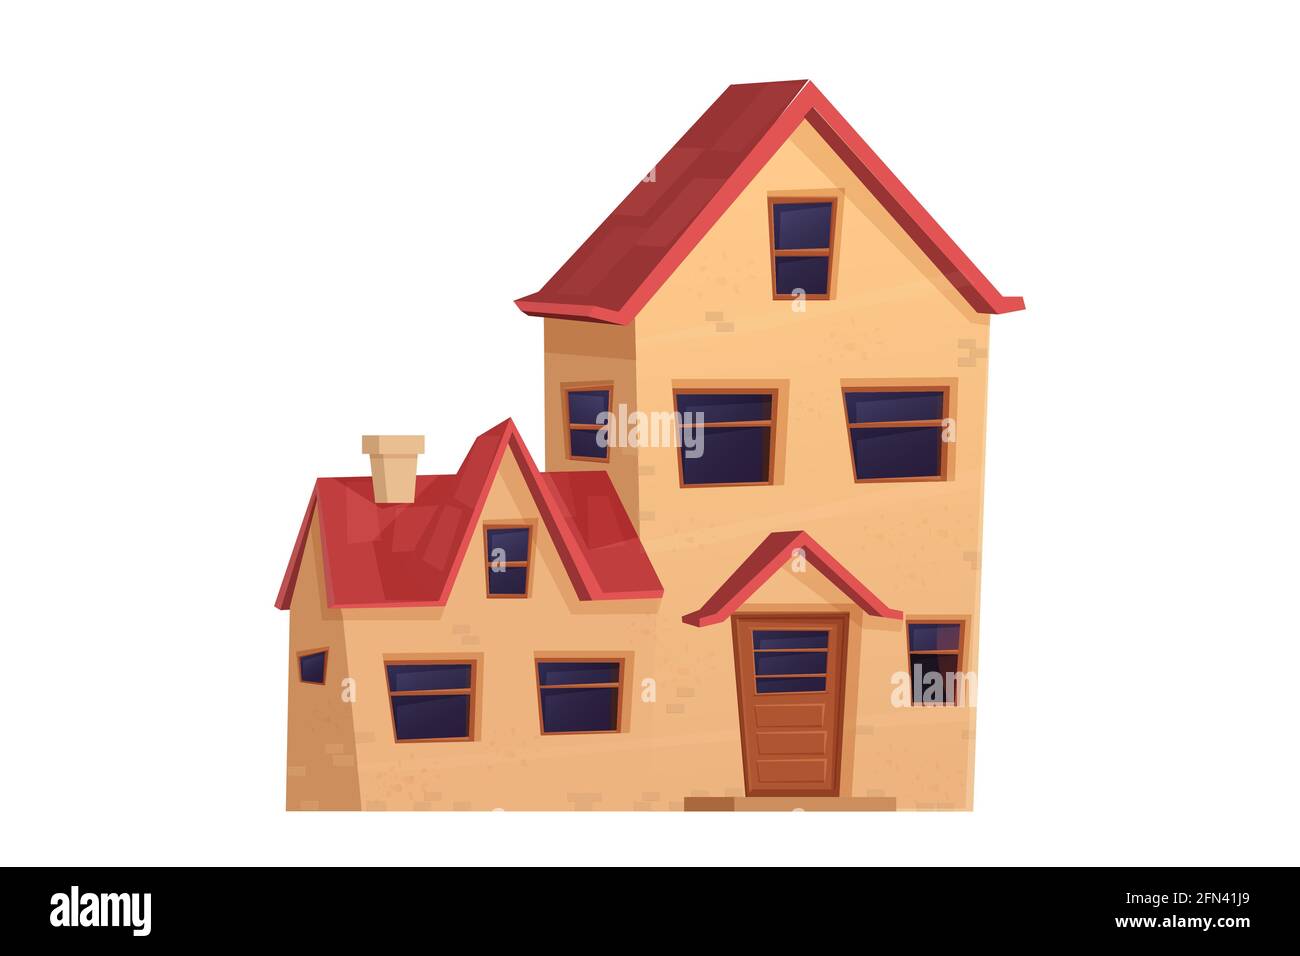 Detaillierte niedliche Haus, Vorstadthaus im Cartoon-Stil isoliert auf weißem Hintergrund. Vorderansicht mit Fenstern, Tür, Dach. Wohnheim, schönes pla Stock Vektor